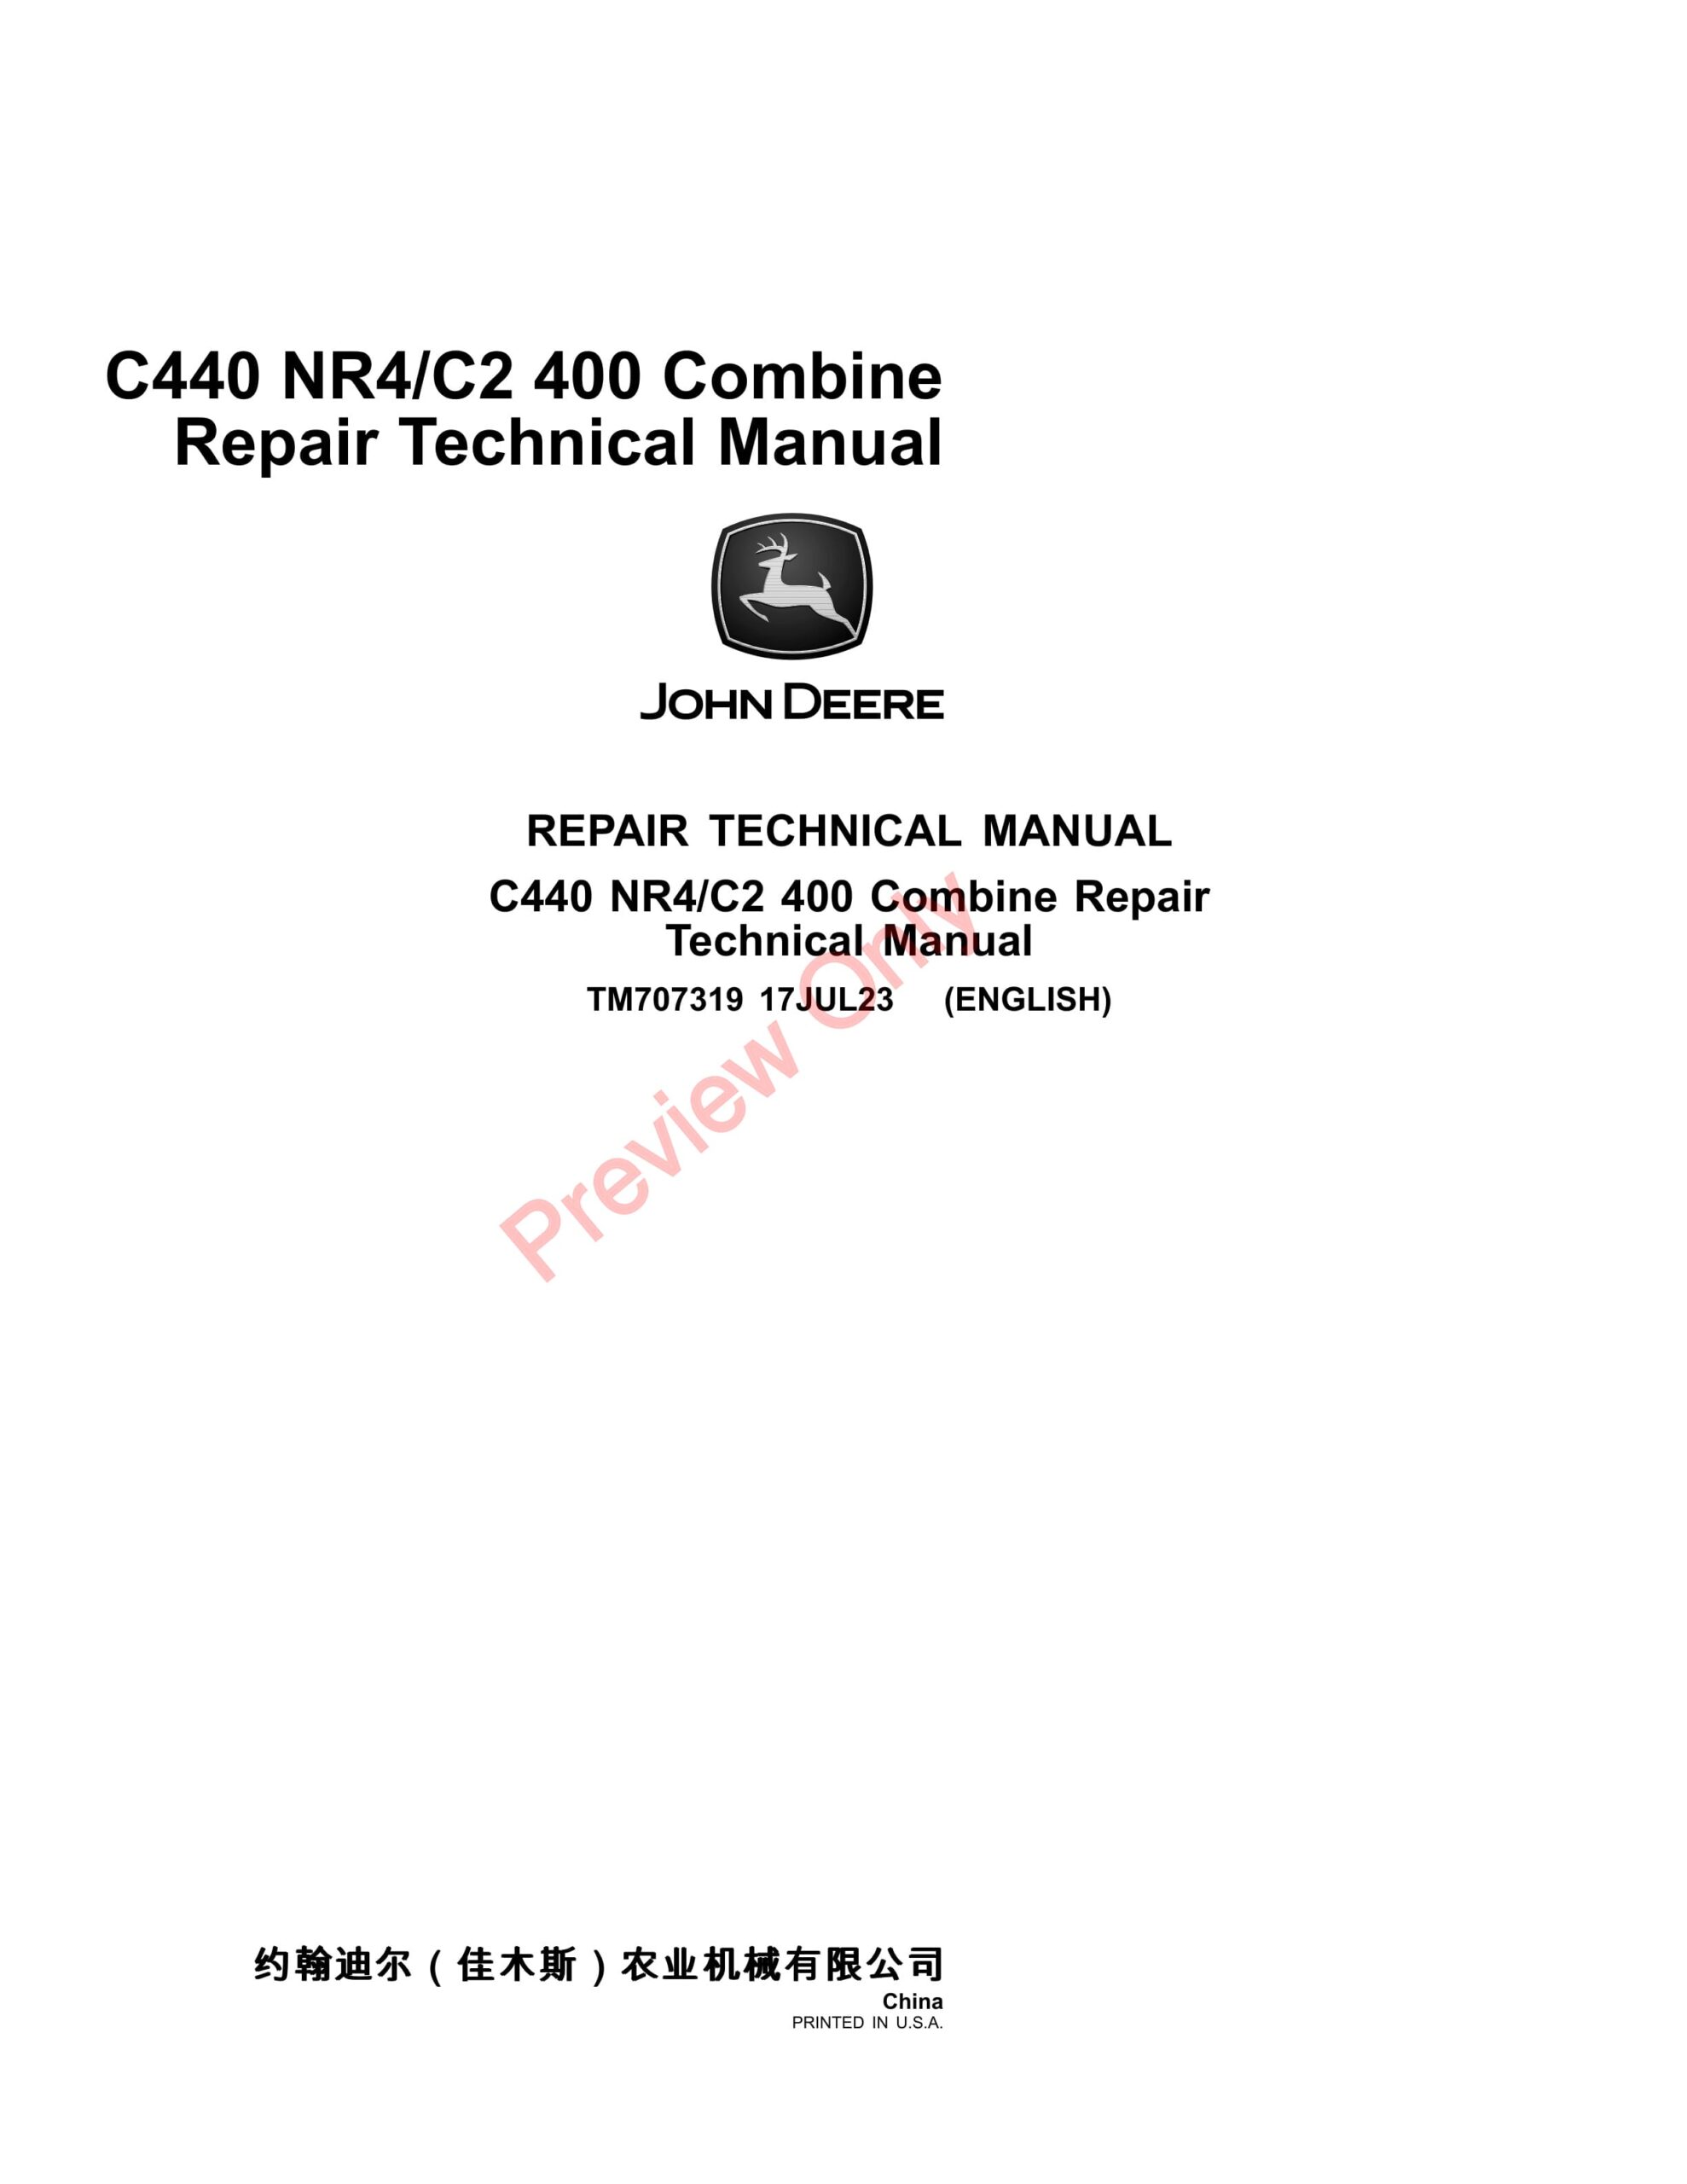 John Deere C440 NR4 Combine Repair Technical Manual TM707319 17JUL23-1